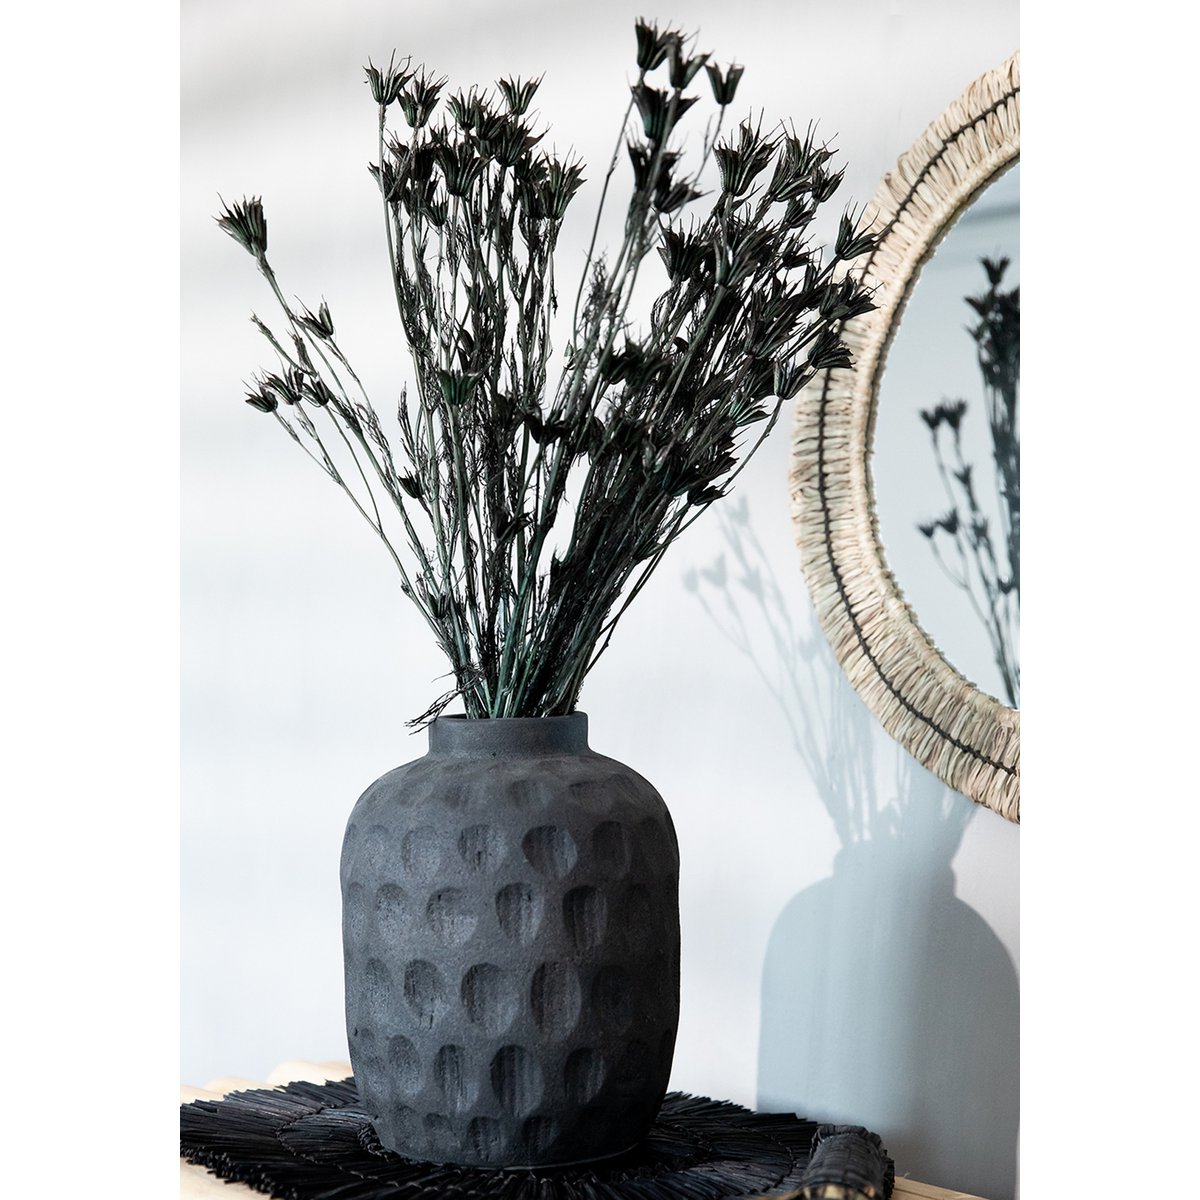 Die trendige Vase - Schwarz - L